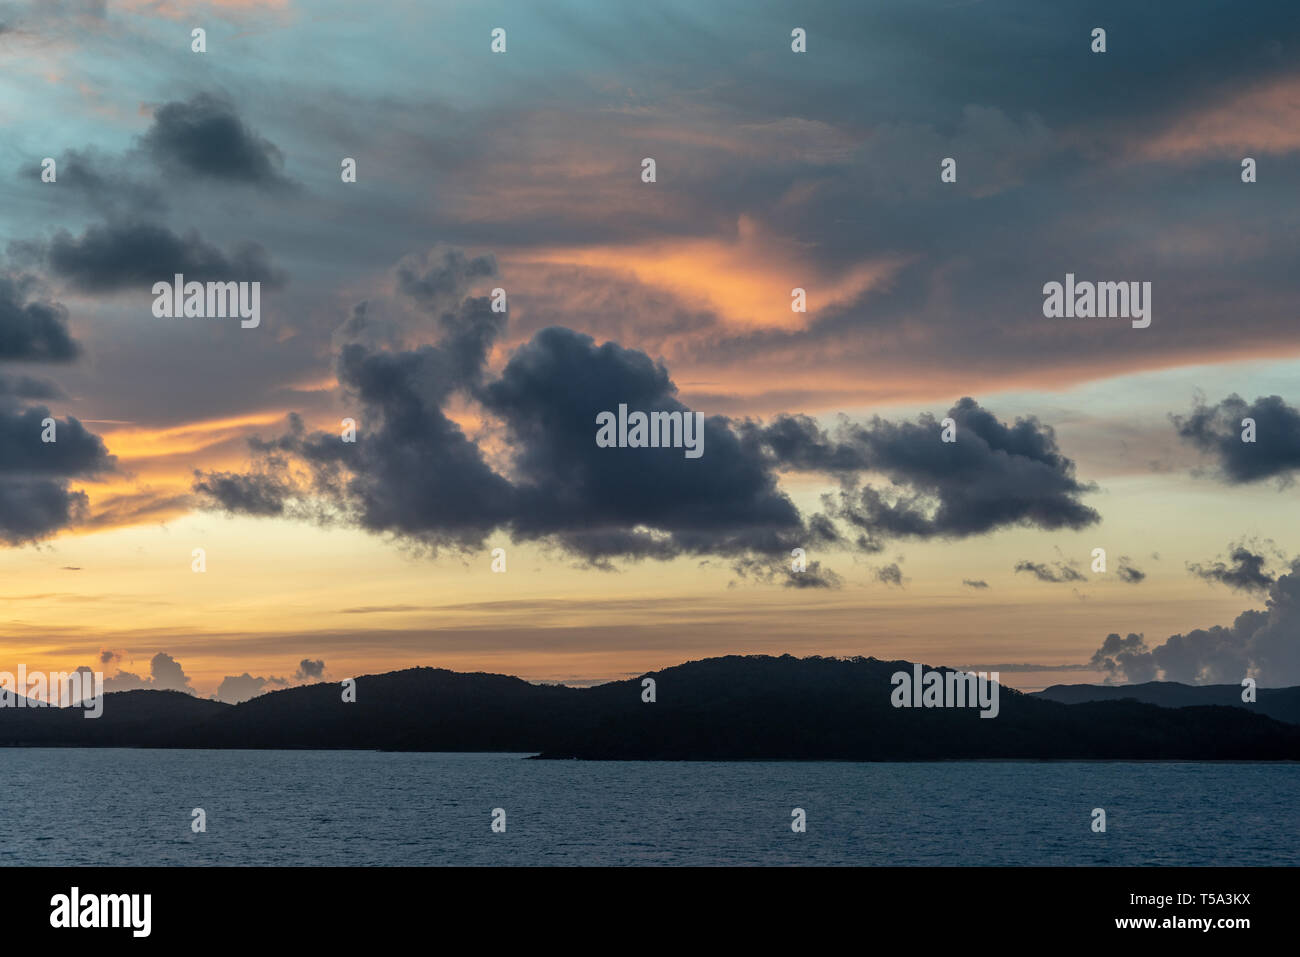 L'île Thursday, Australie - 20 Février 2019 : Pré-sunrise tourné sur l'archipel des îles du détroit de Torres montre les nuages bleu foncé dans la lumière jaune et rouge Banque D'Images